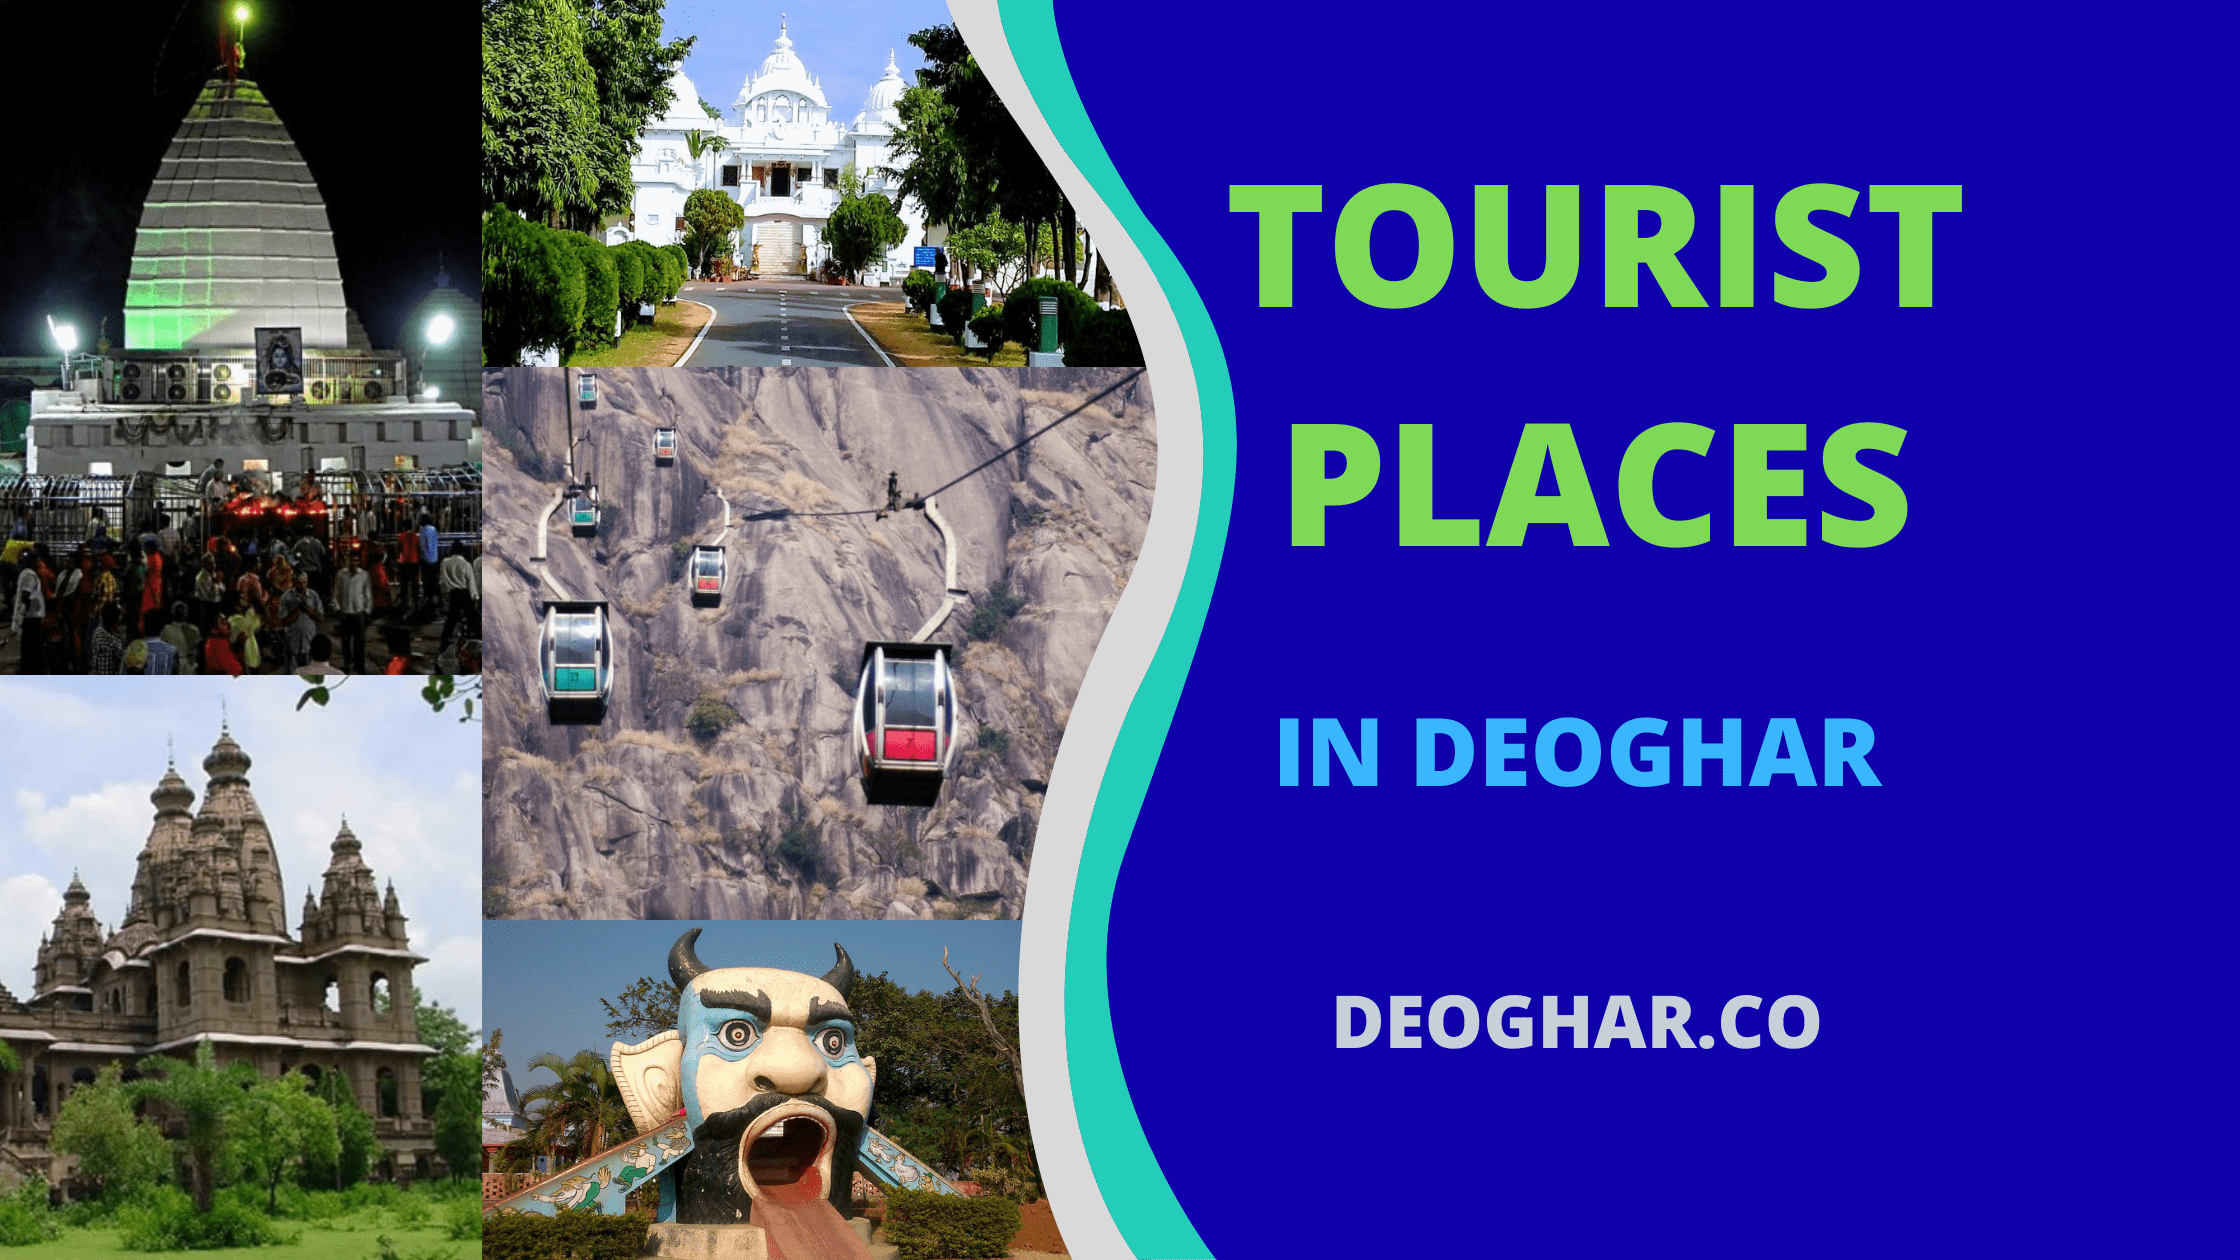 deoghar tour places